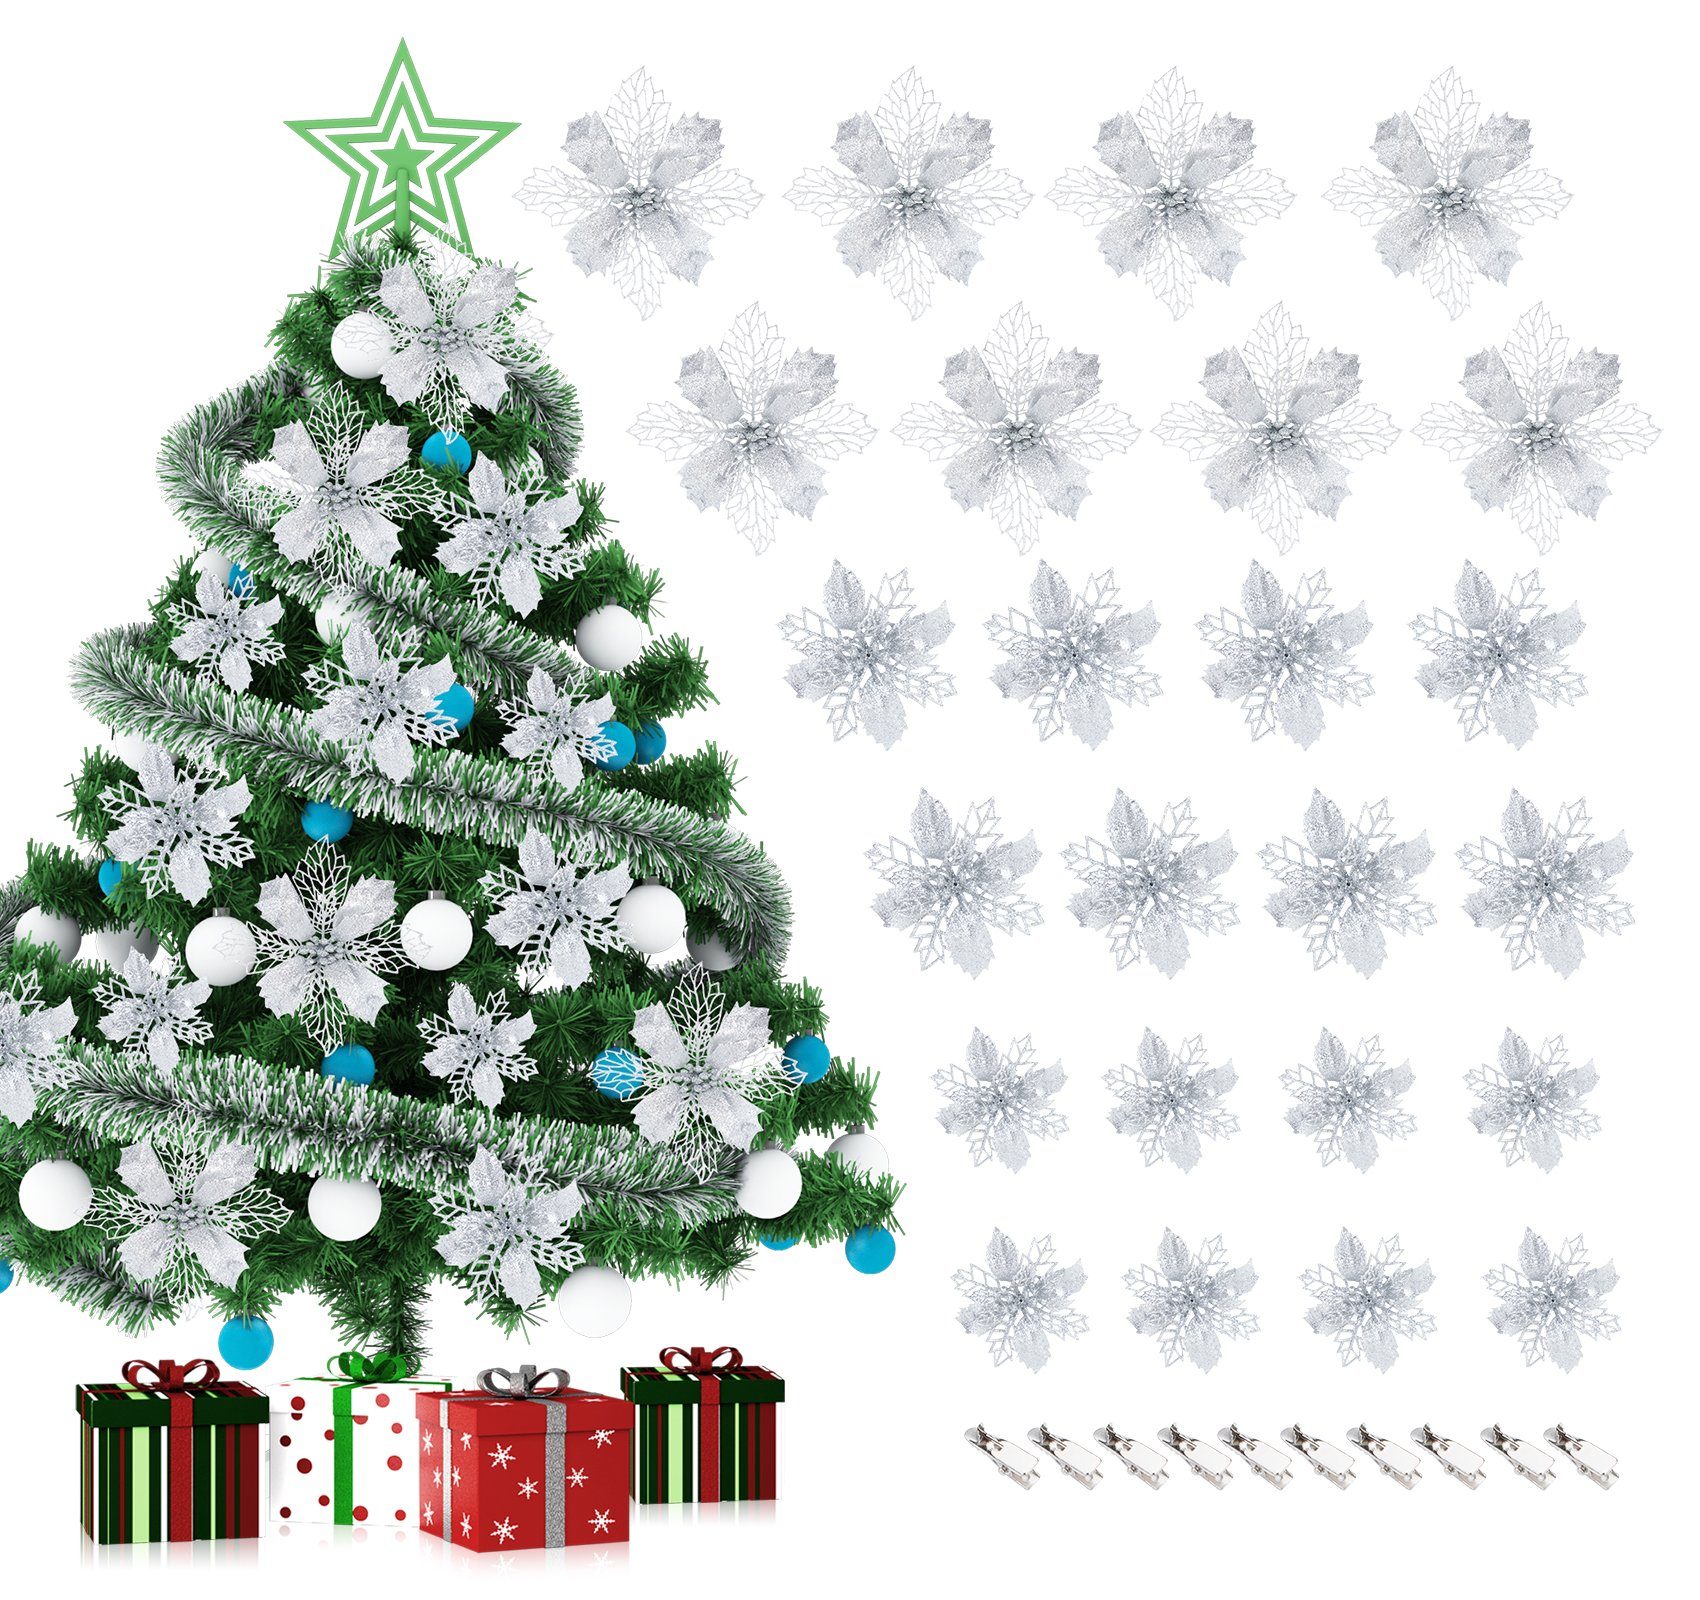 Homewit Christbaumschmuck Glitzer Weihnachtsblumen Kunstblume mit Clips Weihnachtsbaum Deko (24-tlg), Weihnachtsschmuck Weihnachtsdeko Ornamente für Kränze und Girlande